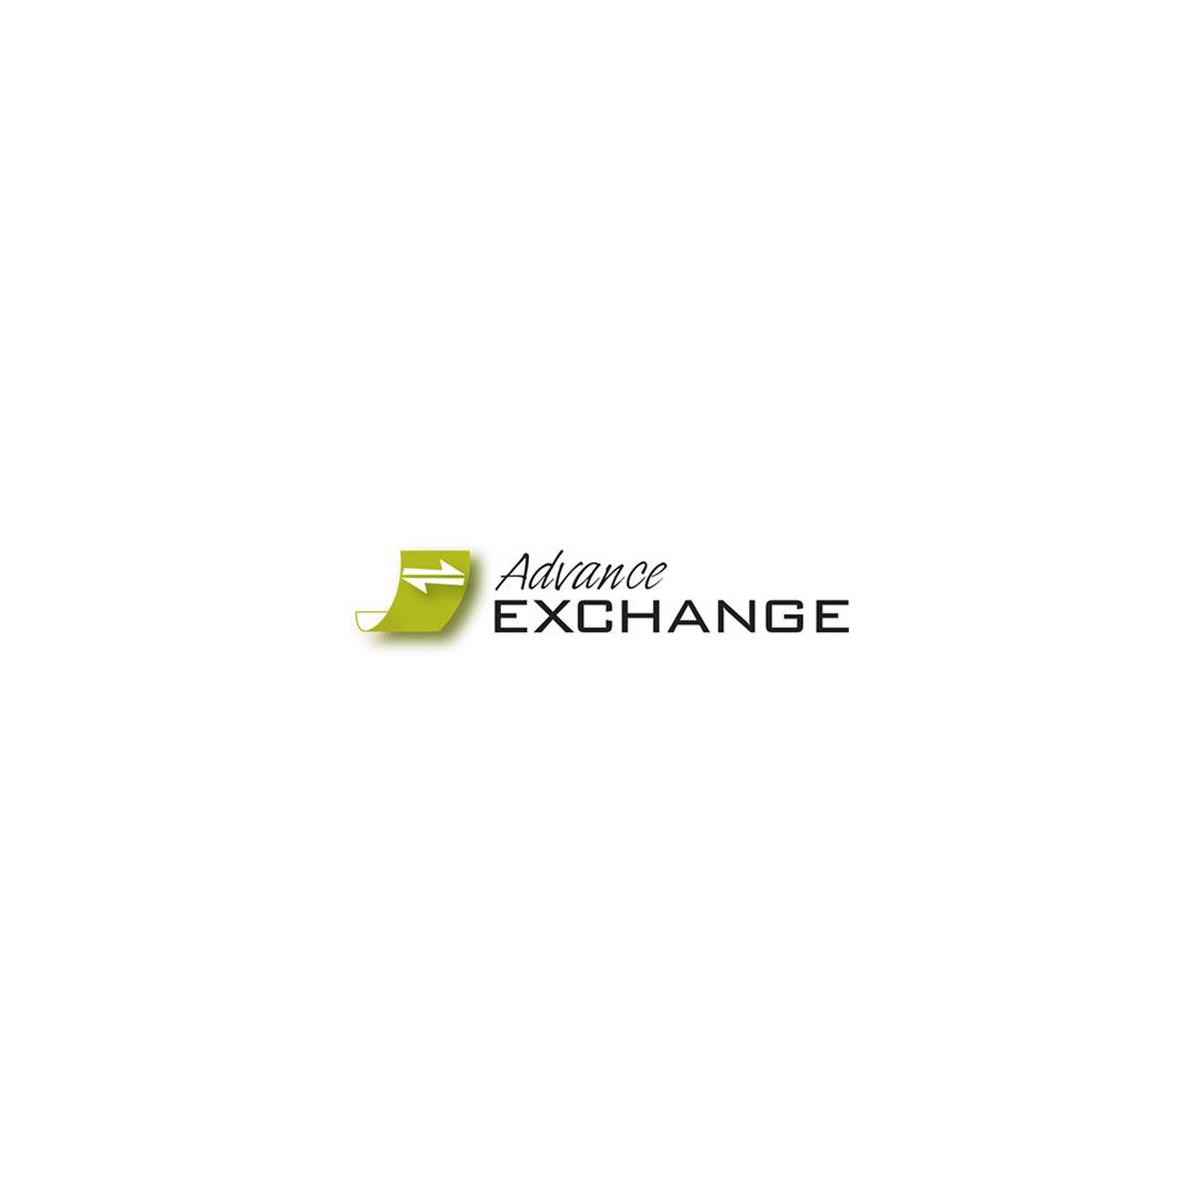 Image of Fujitsu Advance Exchange